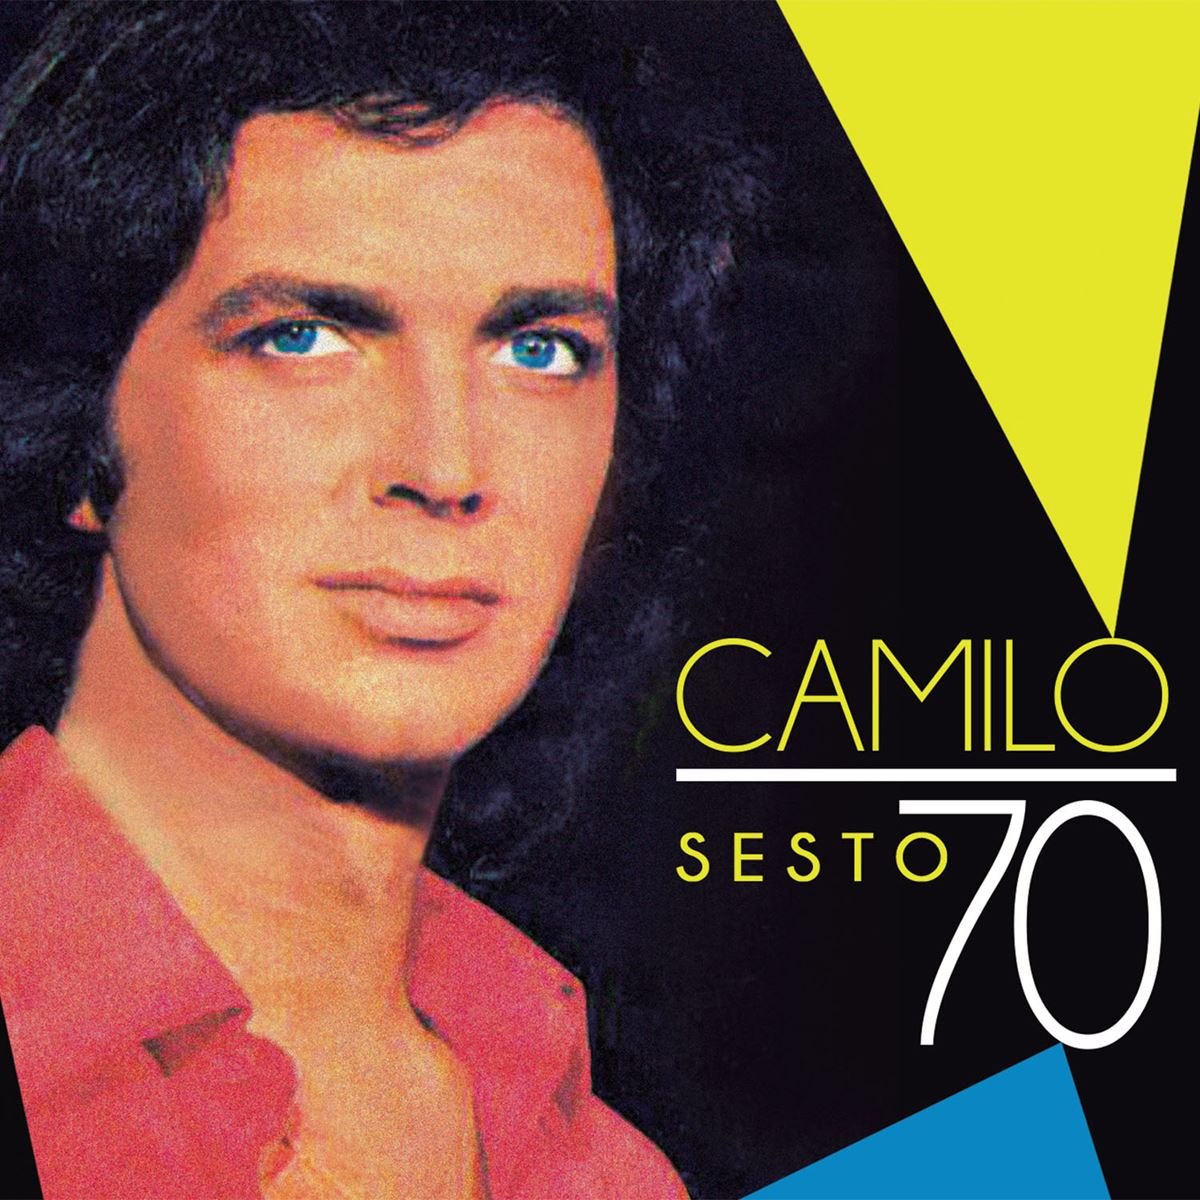 CD Camilo Sesto 70